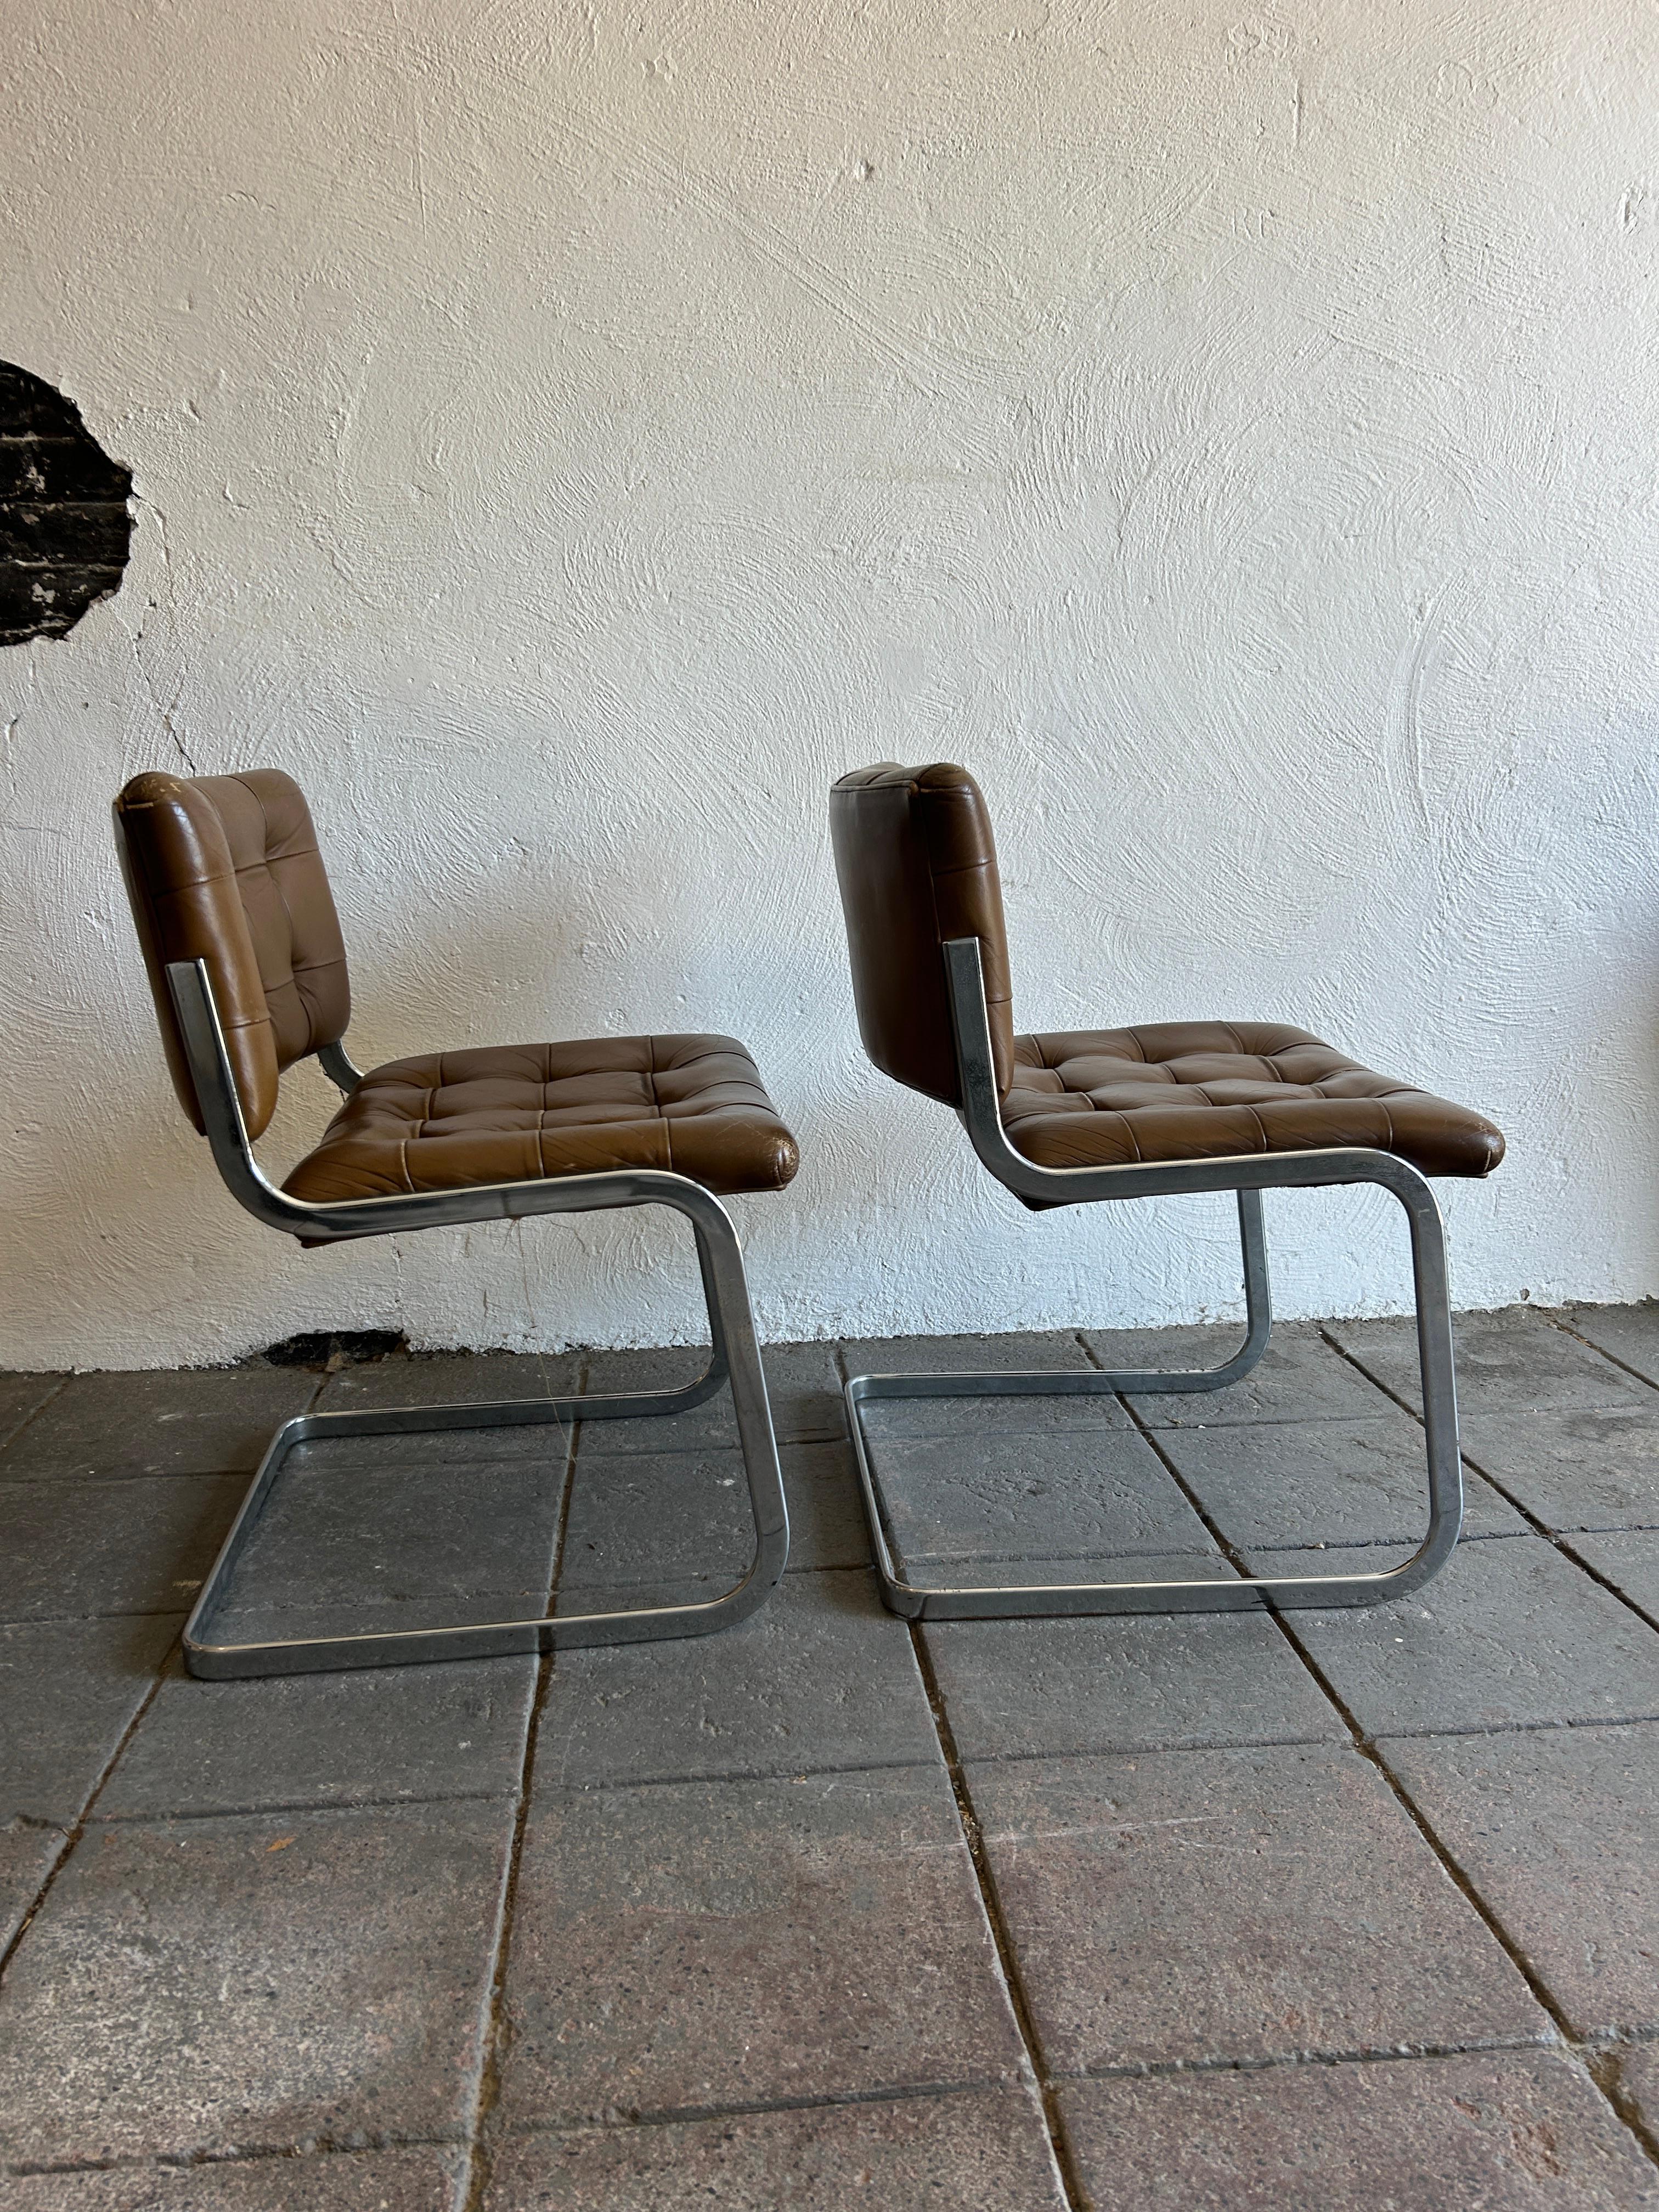 Ein einzigartiges Paar RH-304 Lederstühle, entworfen von Robert Haussmann und hergestellt von Stendig de Sede. Dieses Paar wurde um 1960 hergestellt. Die Stühle sind mit braunem Leder gepolstert. Die abgerundeten Flachstahlrohrrahmen sind aus